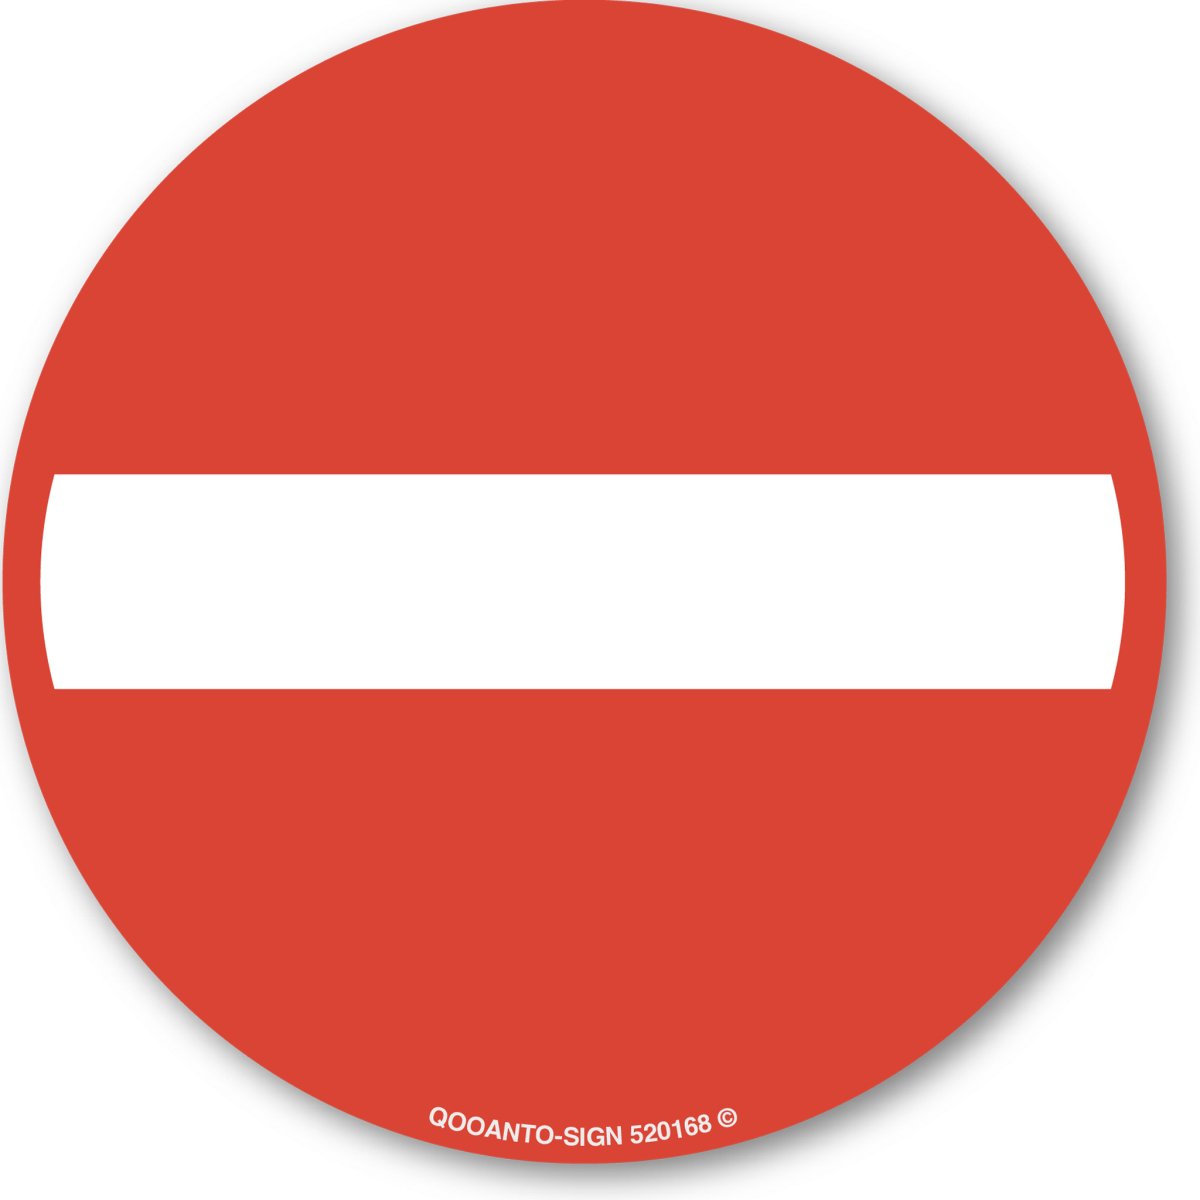 Einfahrt Verboten Verkehrsschild oder Aufkleber aus Alu-Verbund oder Selbstklebefolie mit UV-Schutz - QOOANTO-SIGN